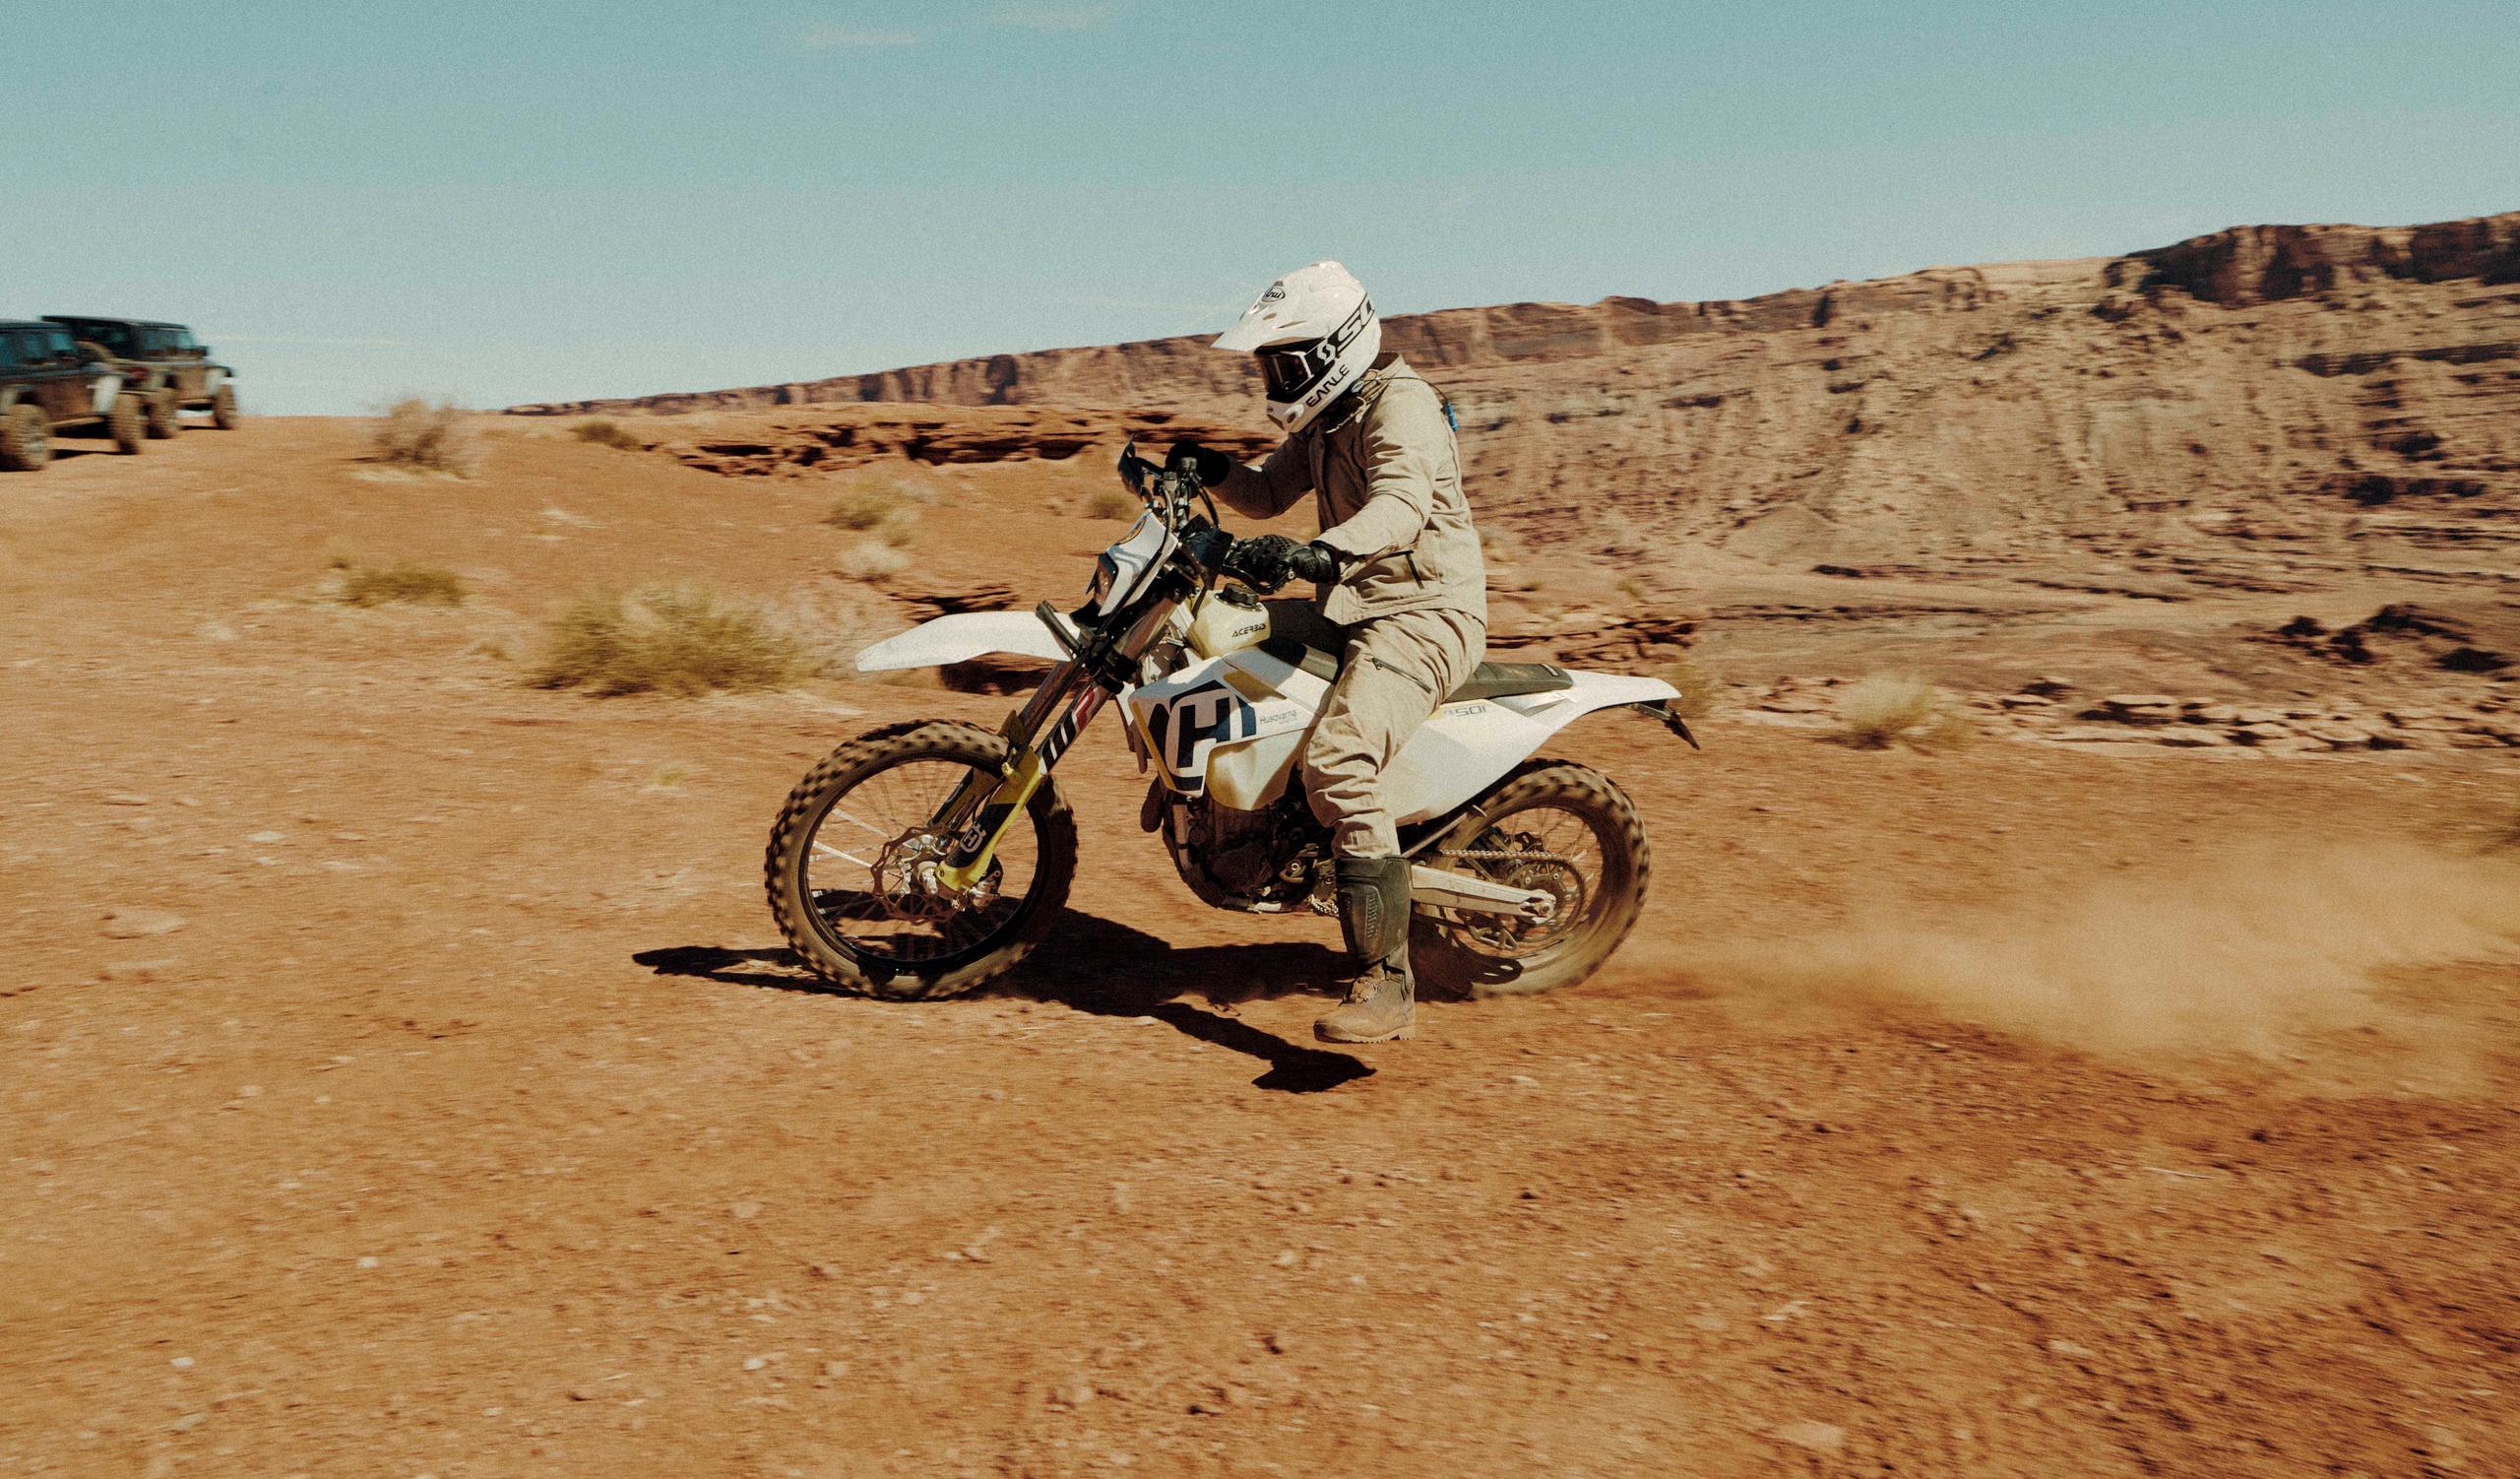 Men wearing Mojave Motorcycle Suit on motorcycle